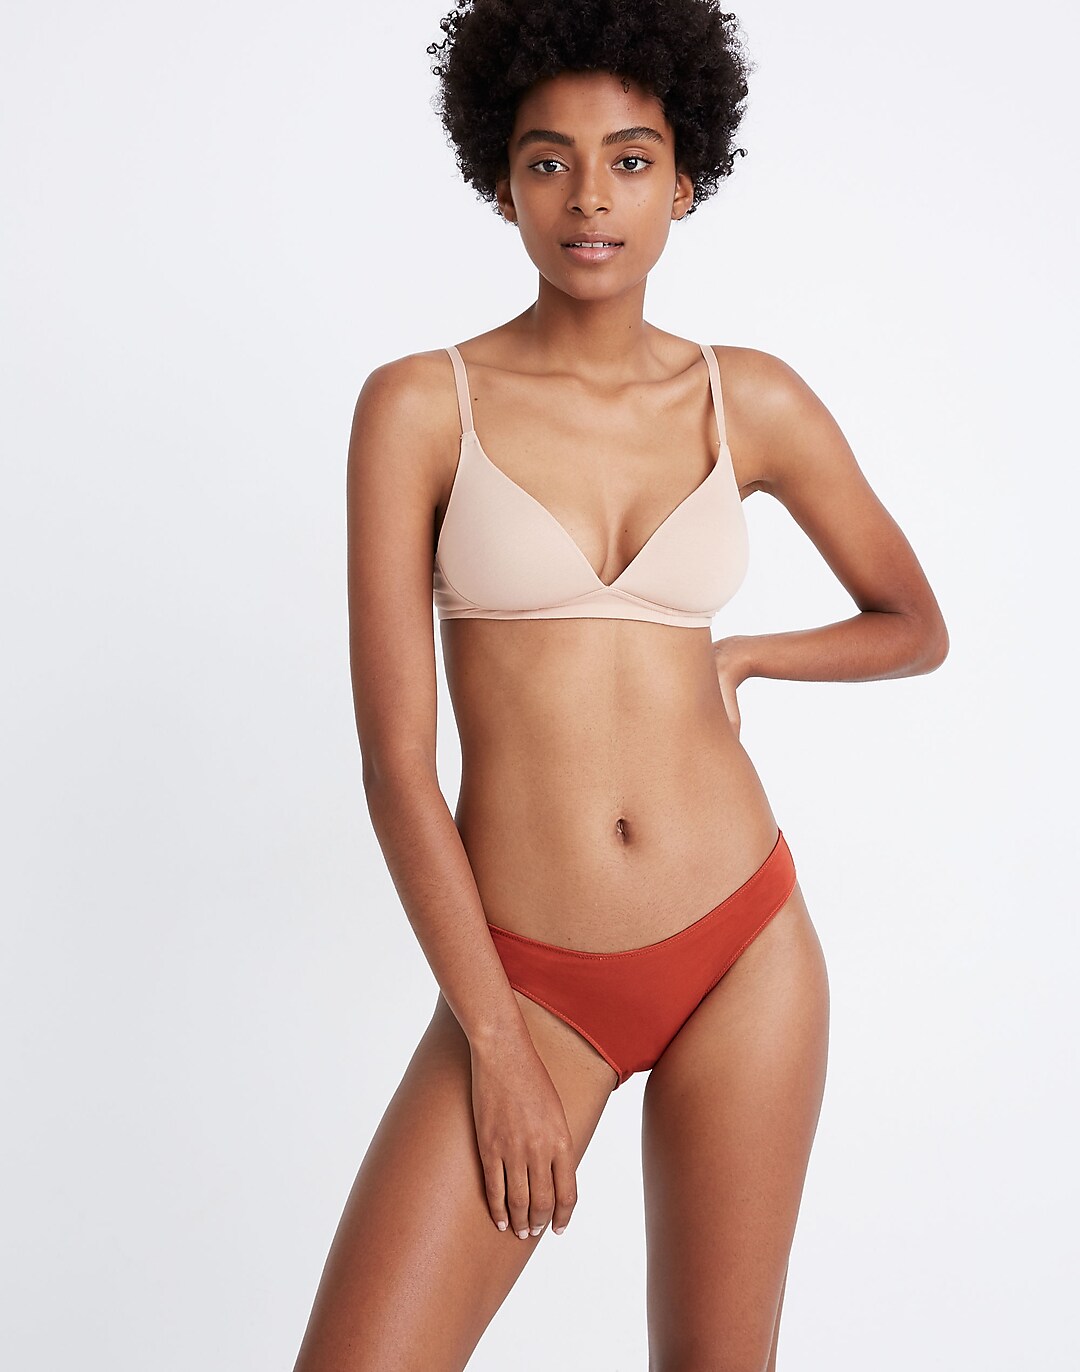 Women's Cotton Modal Blend Bikini 6-Pack